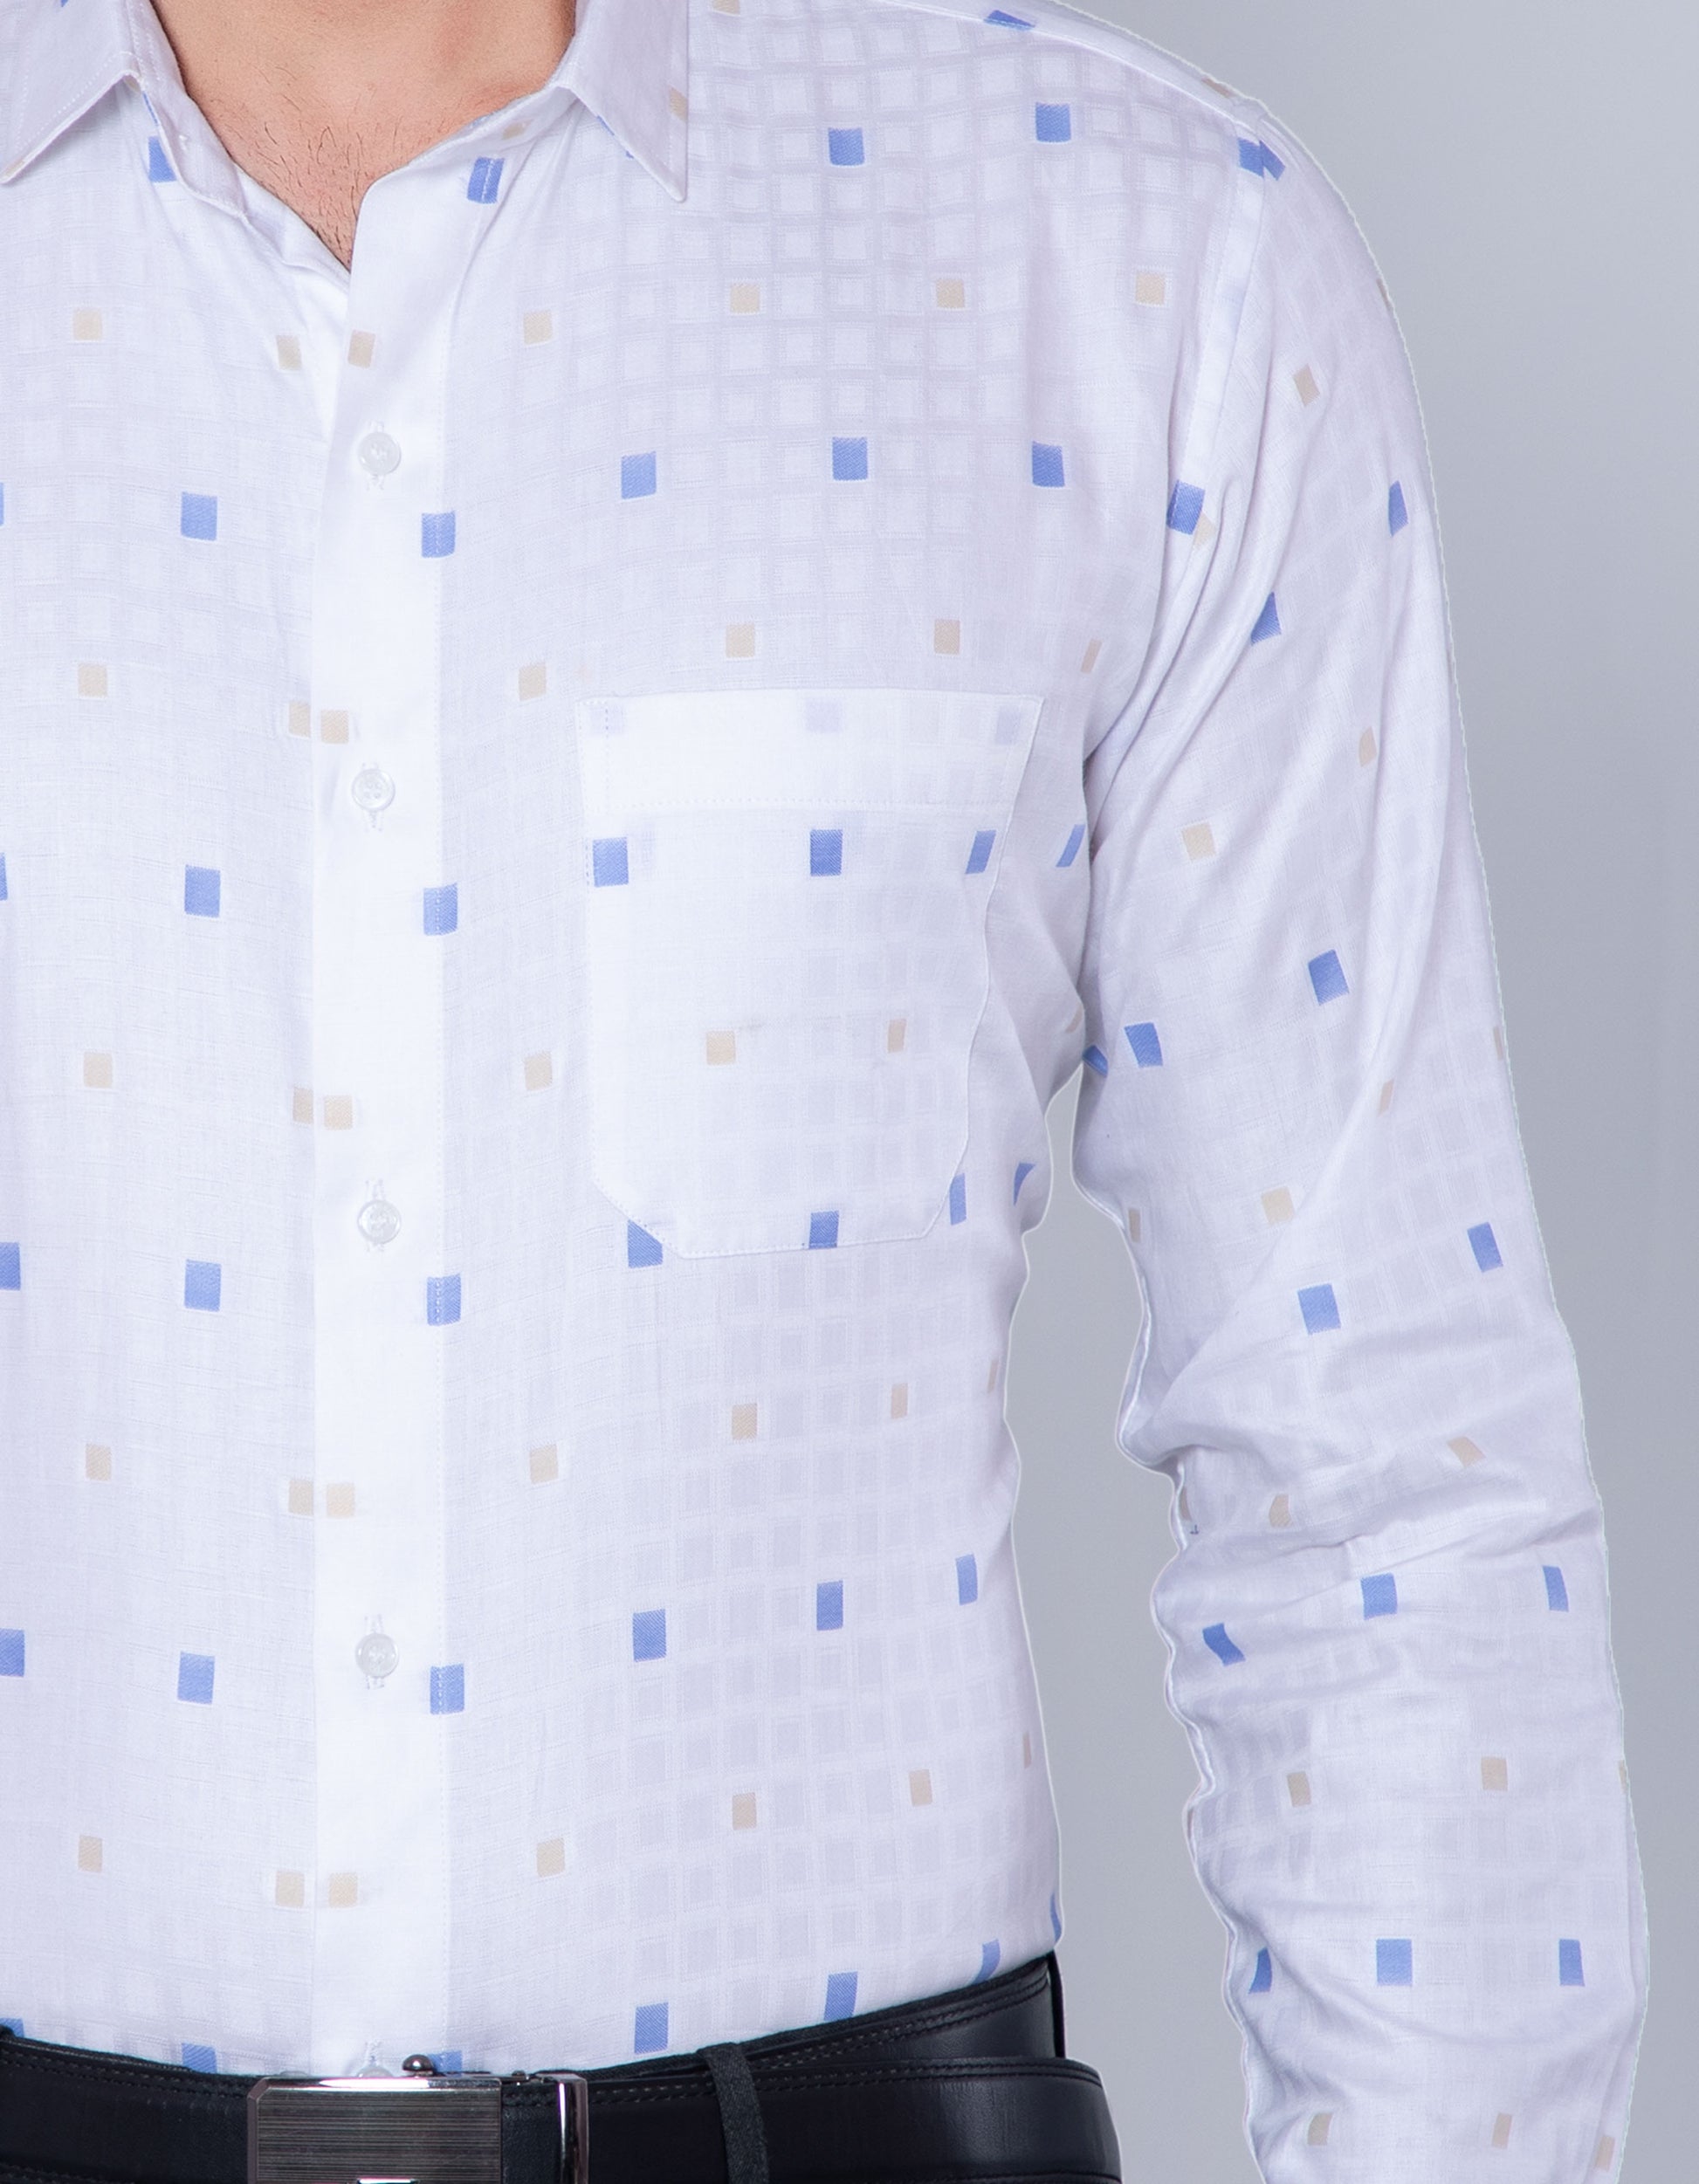 Rich white color box pattern shirt